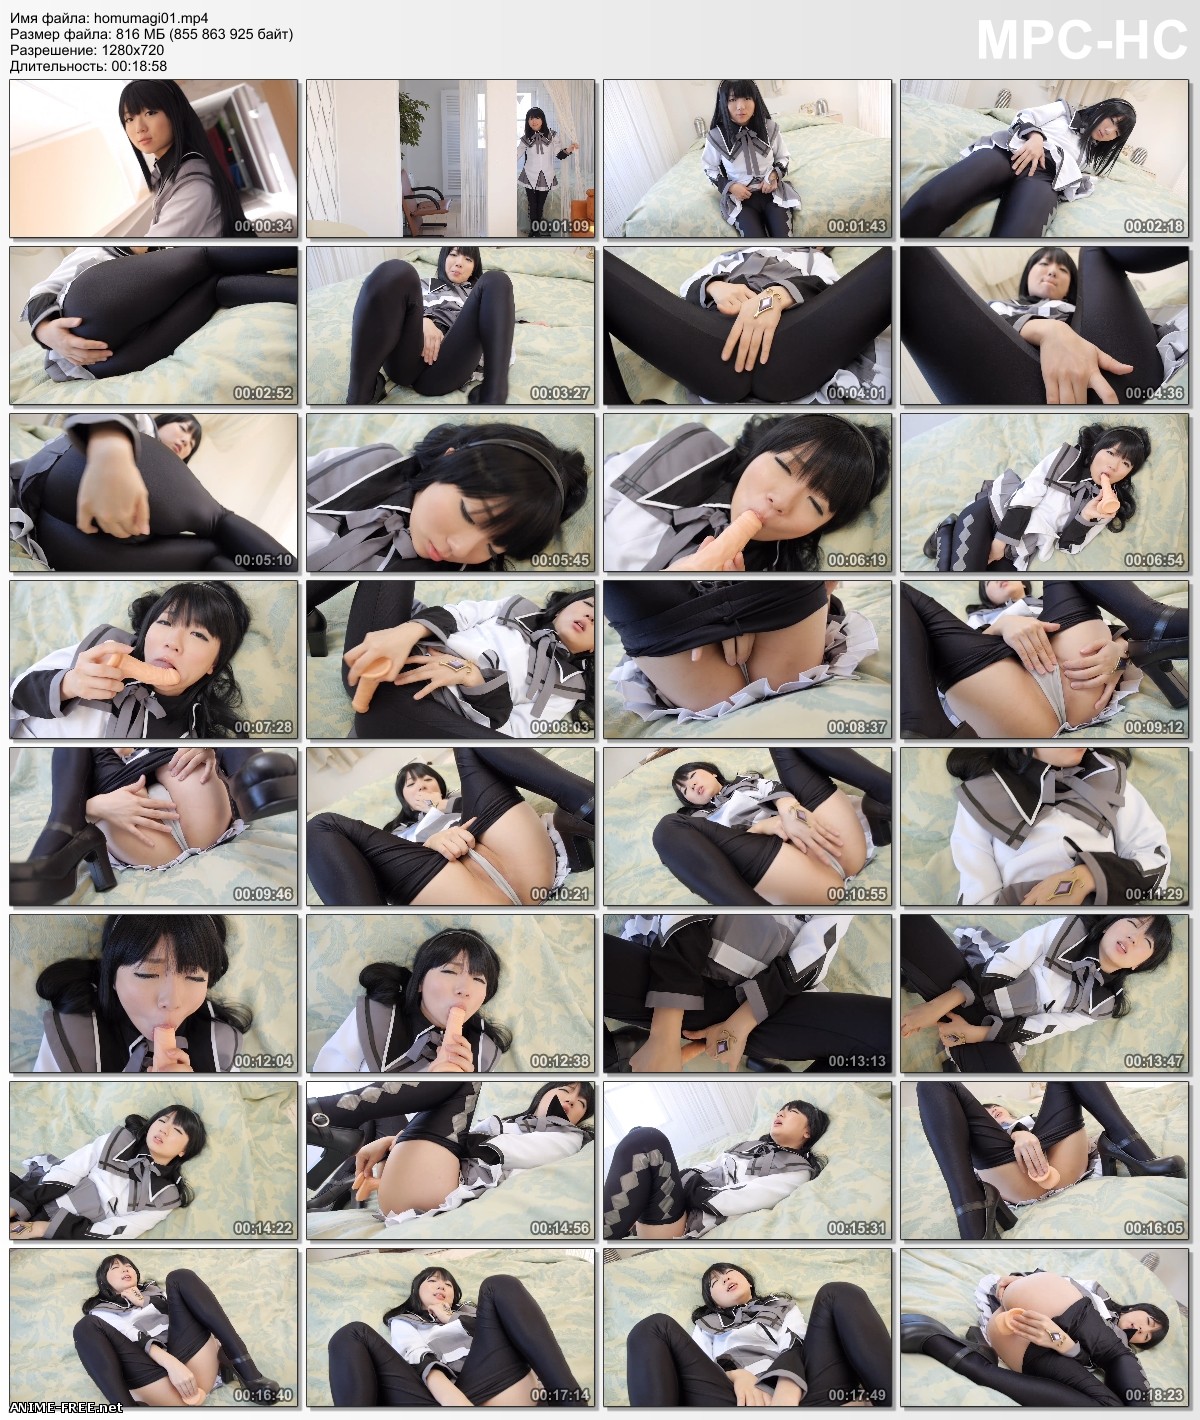 Ero Anime Cosplay 1 / Эротический Аниме Косплей 1 (ВИДЕО) (@factory) [2014] [video] [1080p, 720p] Erotic Cosplay